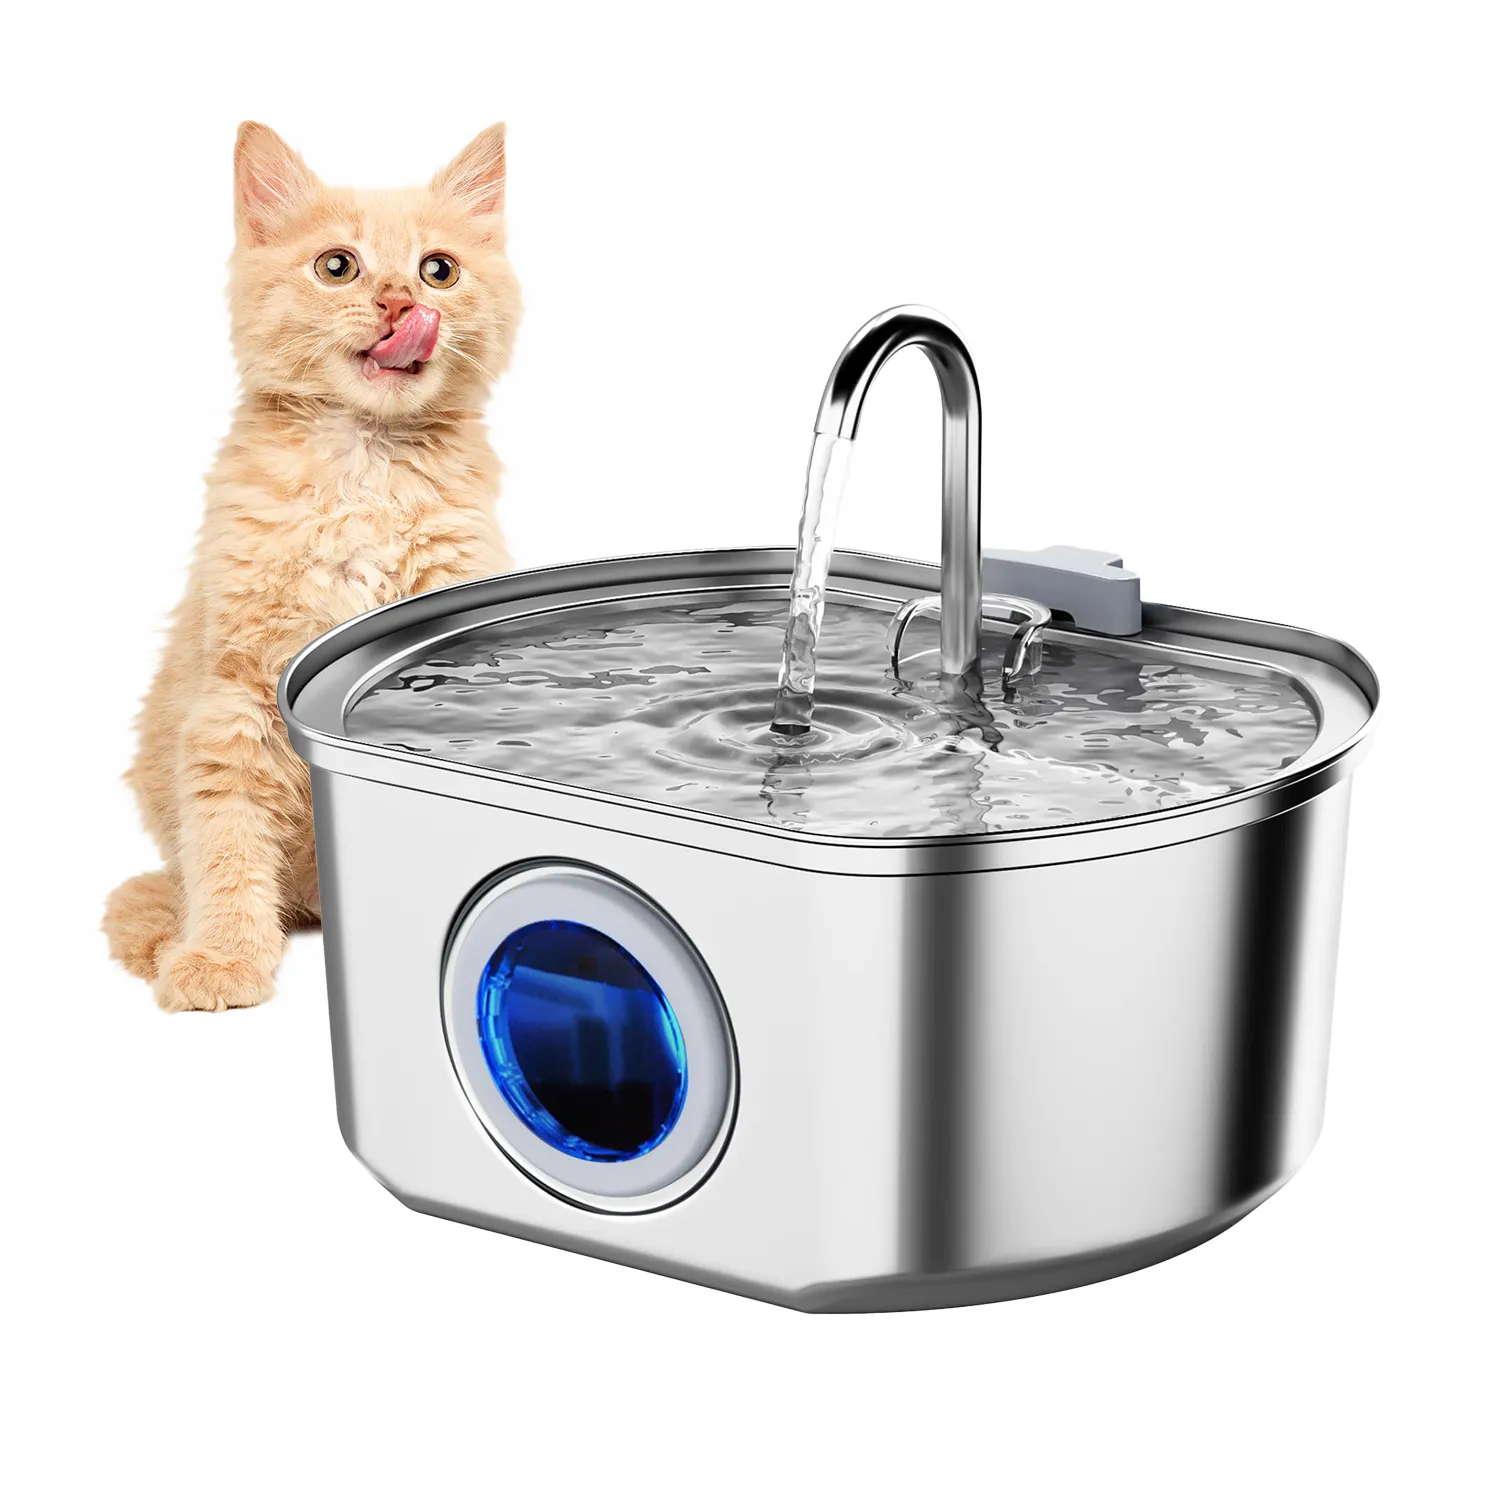 Fonte automática de água para gatos, dispensador de água em aço inoxidável 3L